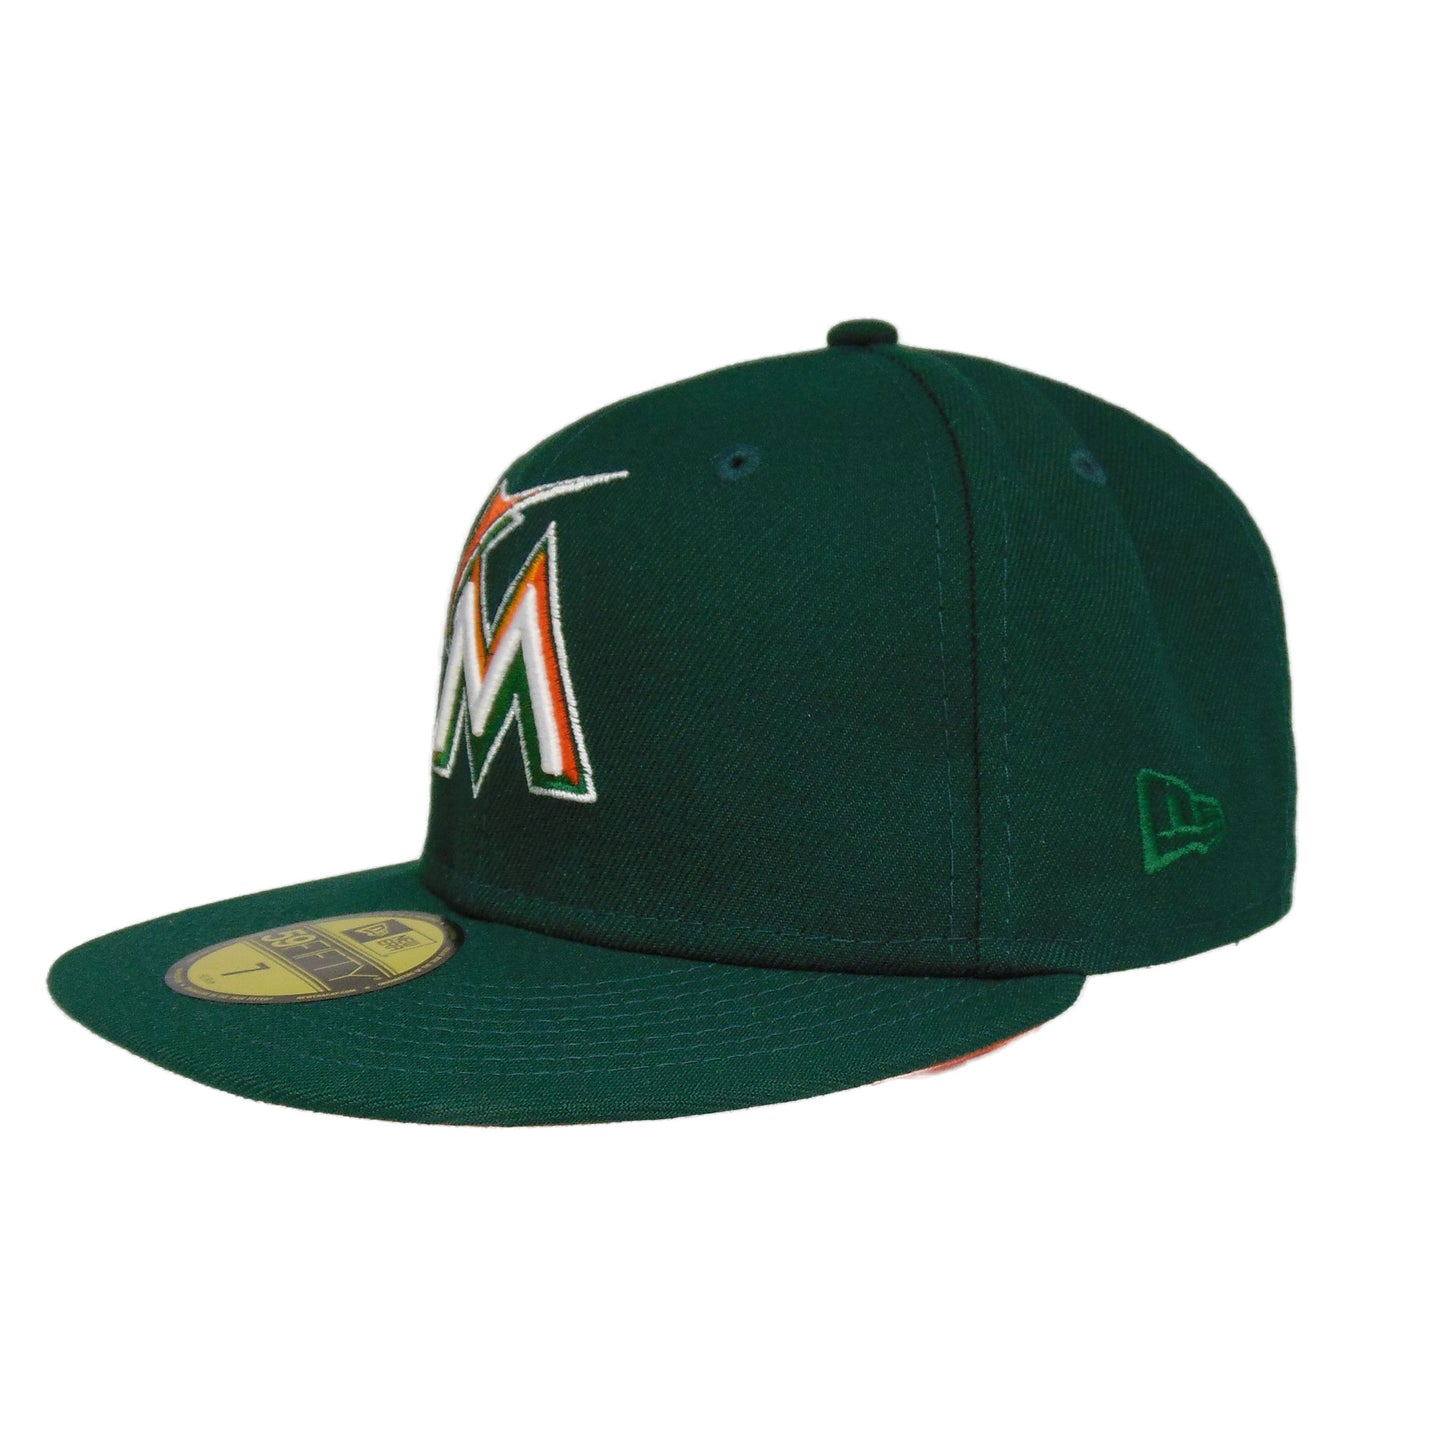 Miami Marlins Custom New Era Cap Green 2019